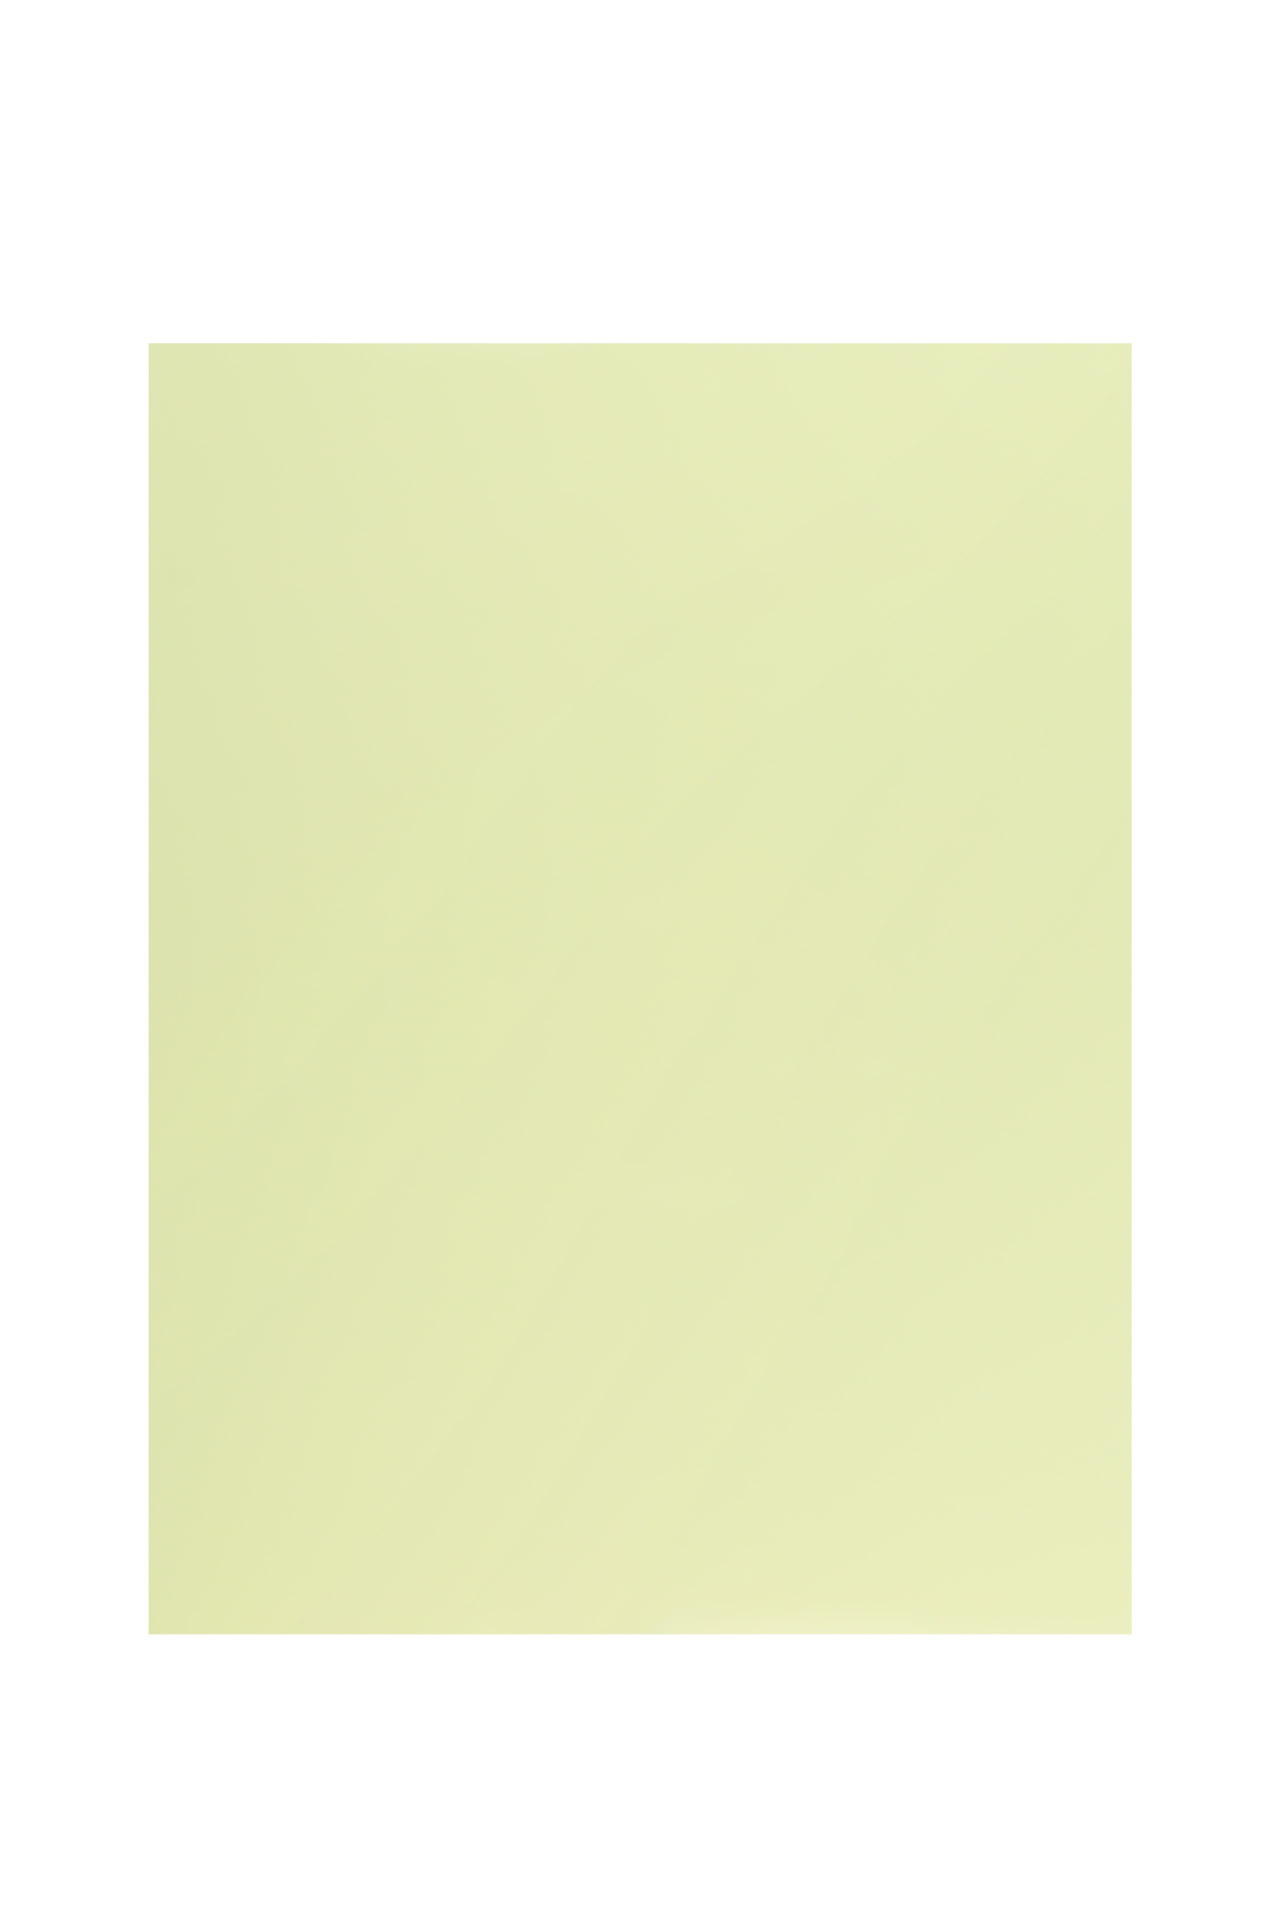 Pickguard Blank - 315 x 240 mm (12.4 x 9.45") - Mint Green